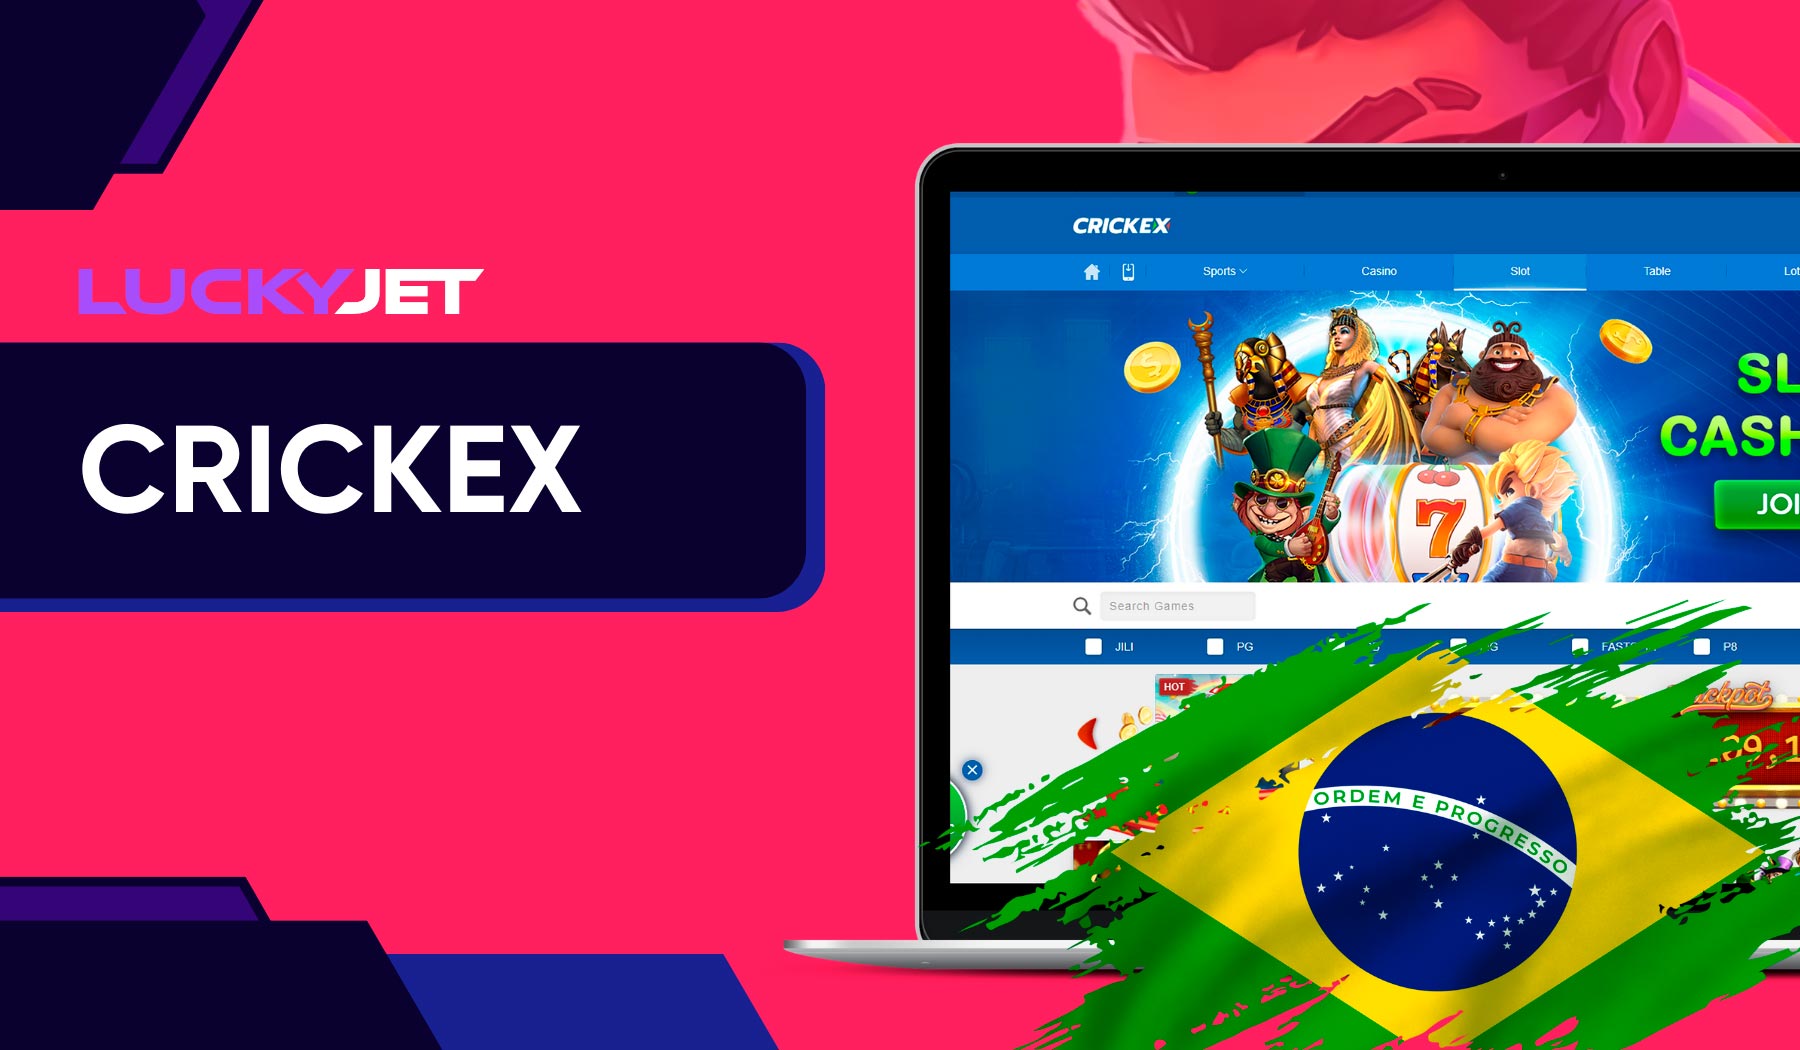 Crickex Lucky Jet no mercado brasileiro